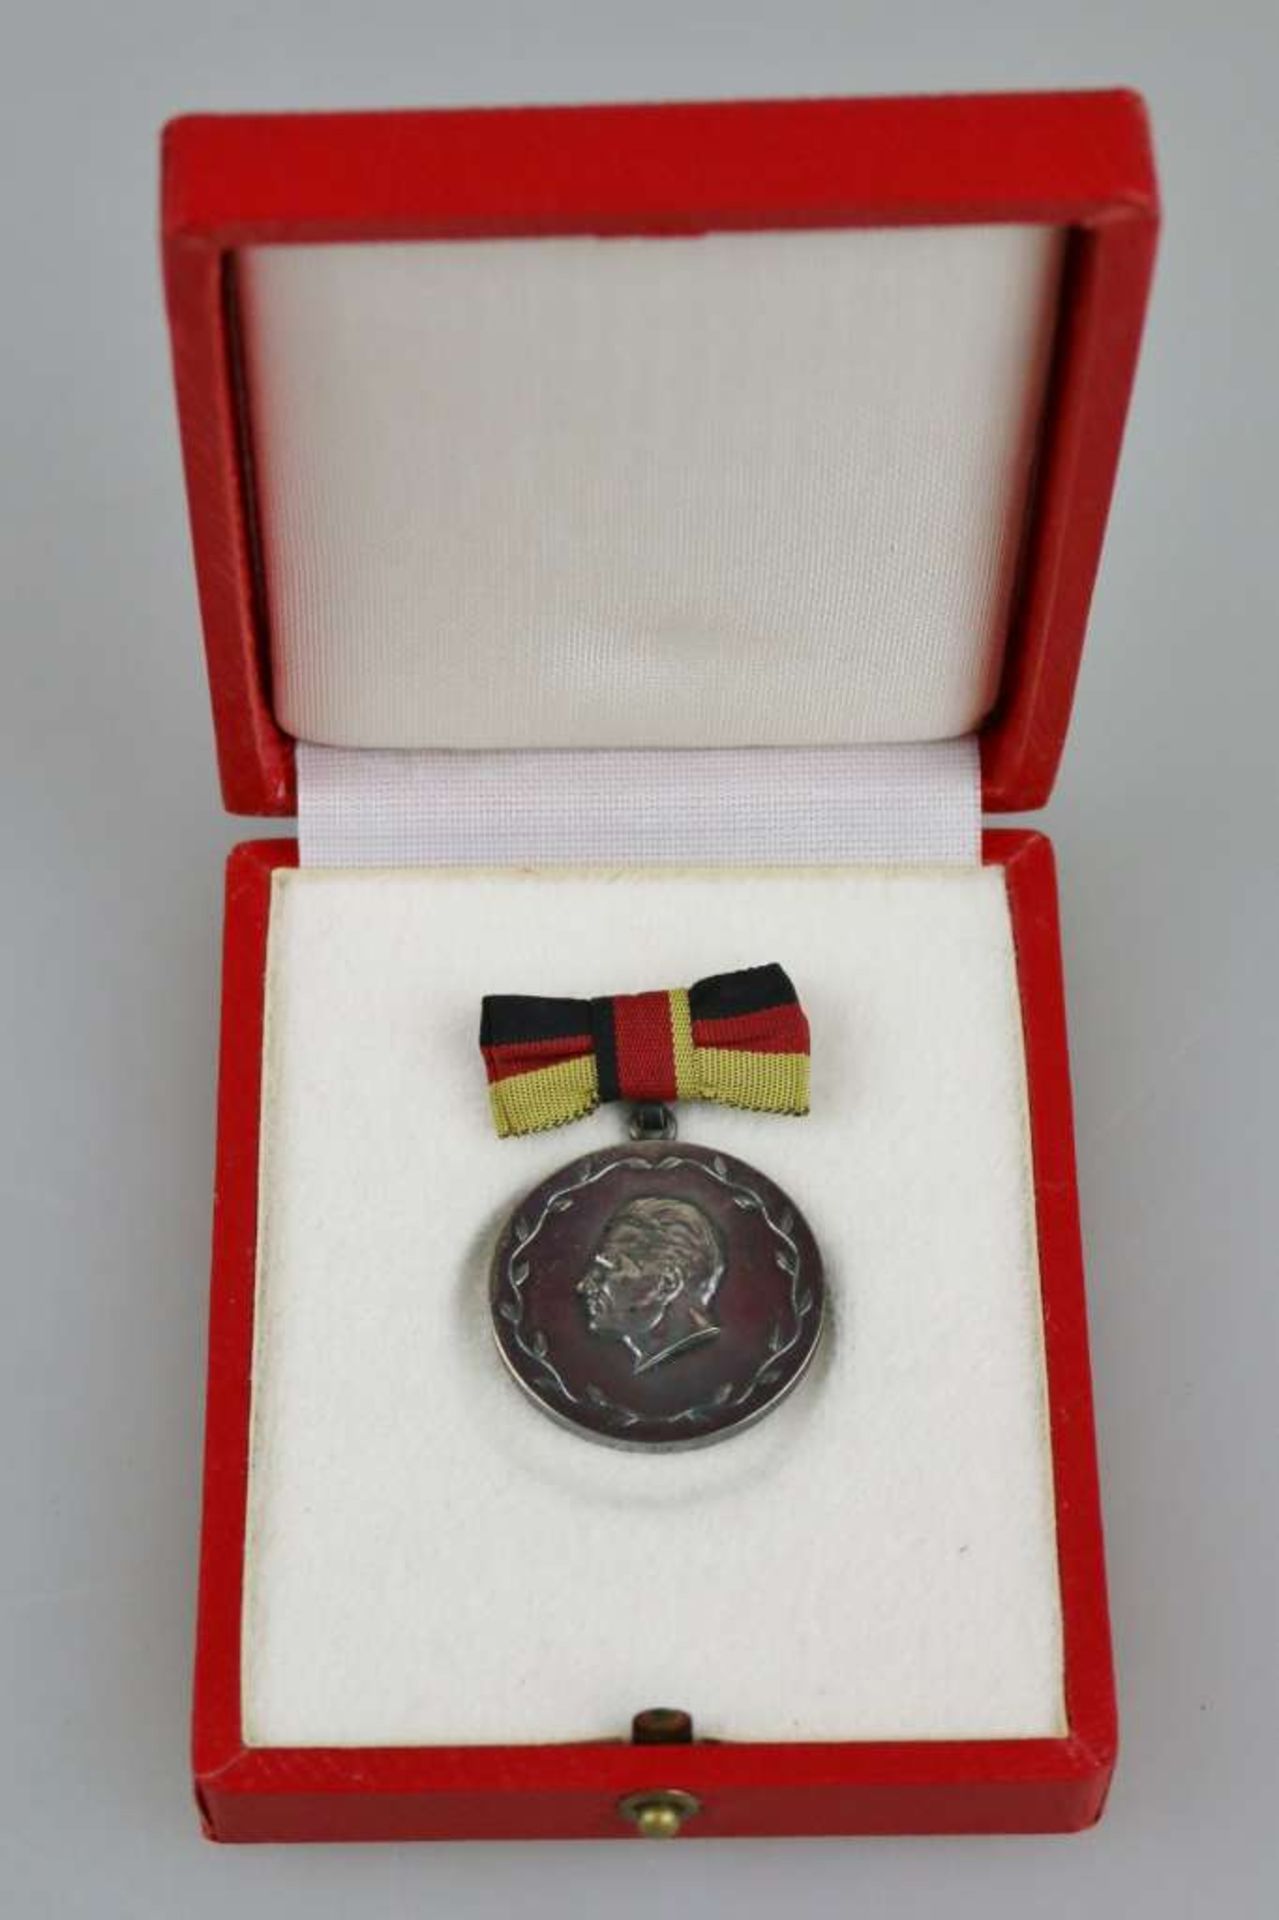 DDR, Medaille Meister des Sports. Verliehen 1955-1970. Silber mit Punze 900 im Rand. Gewicht: c